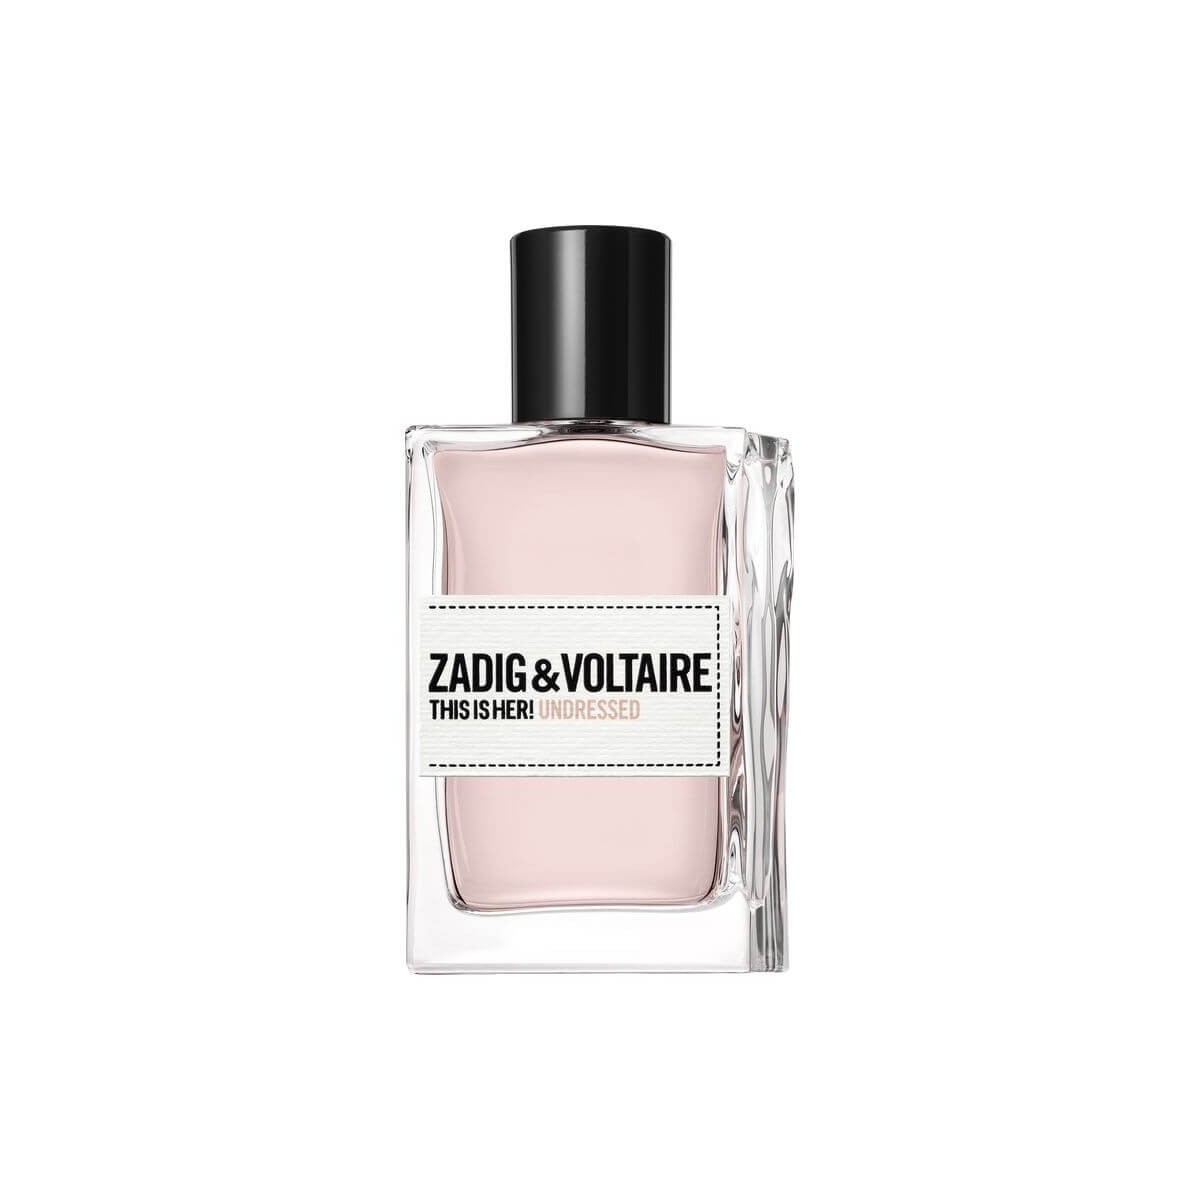 Zadig&Voltaire This Is Her Undressed Eau de Parfum 50ml spray